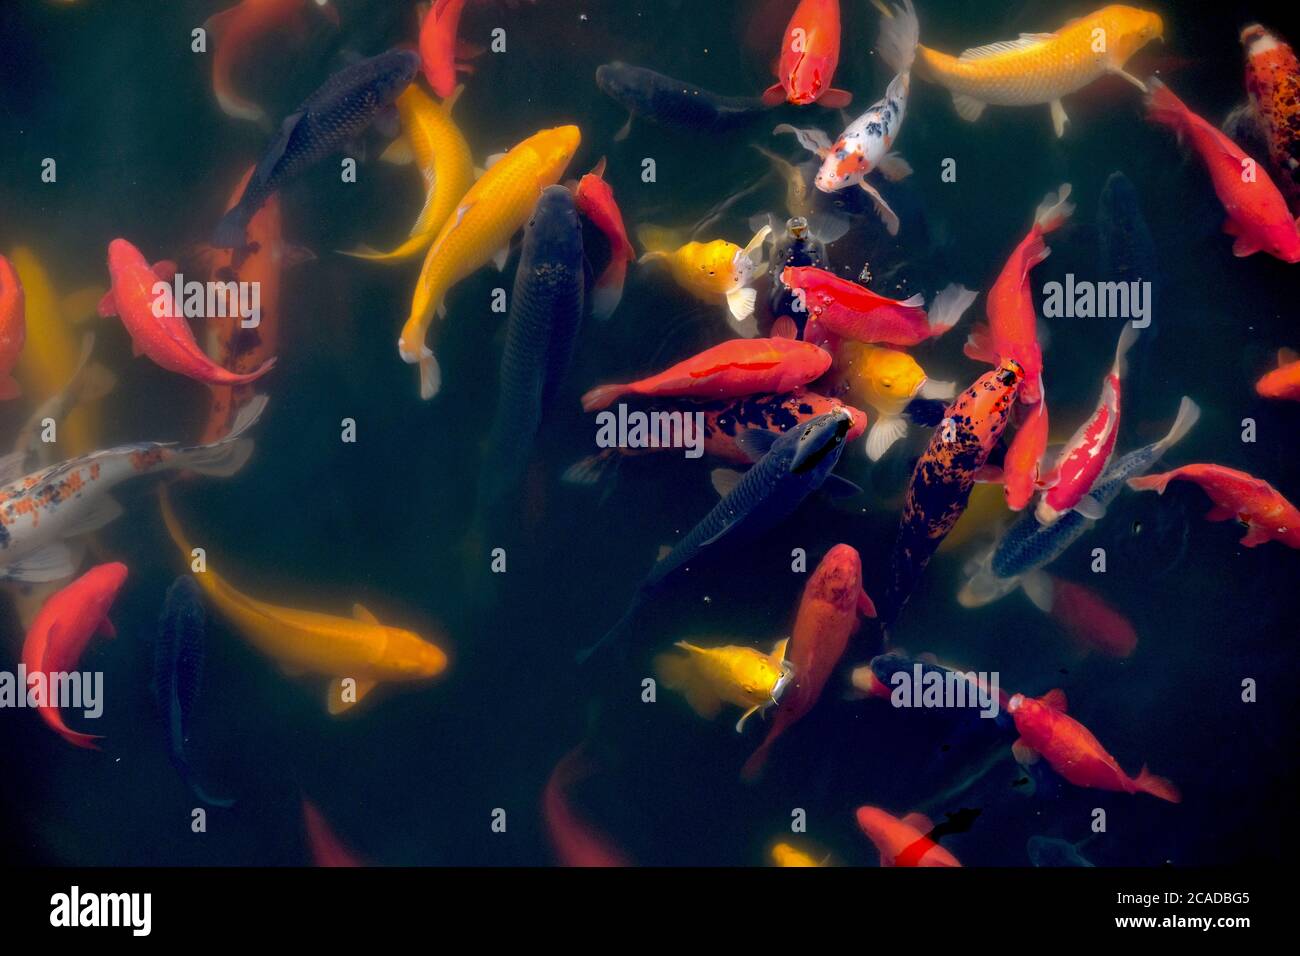 vista superior de muchos peces koi de colores forrajeando en el agua del lago. Fondo oscuro. Concepto de cultura del este asiático. Foto de stock